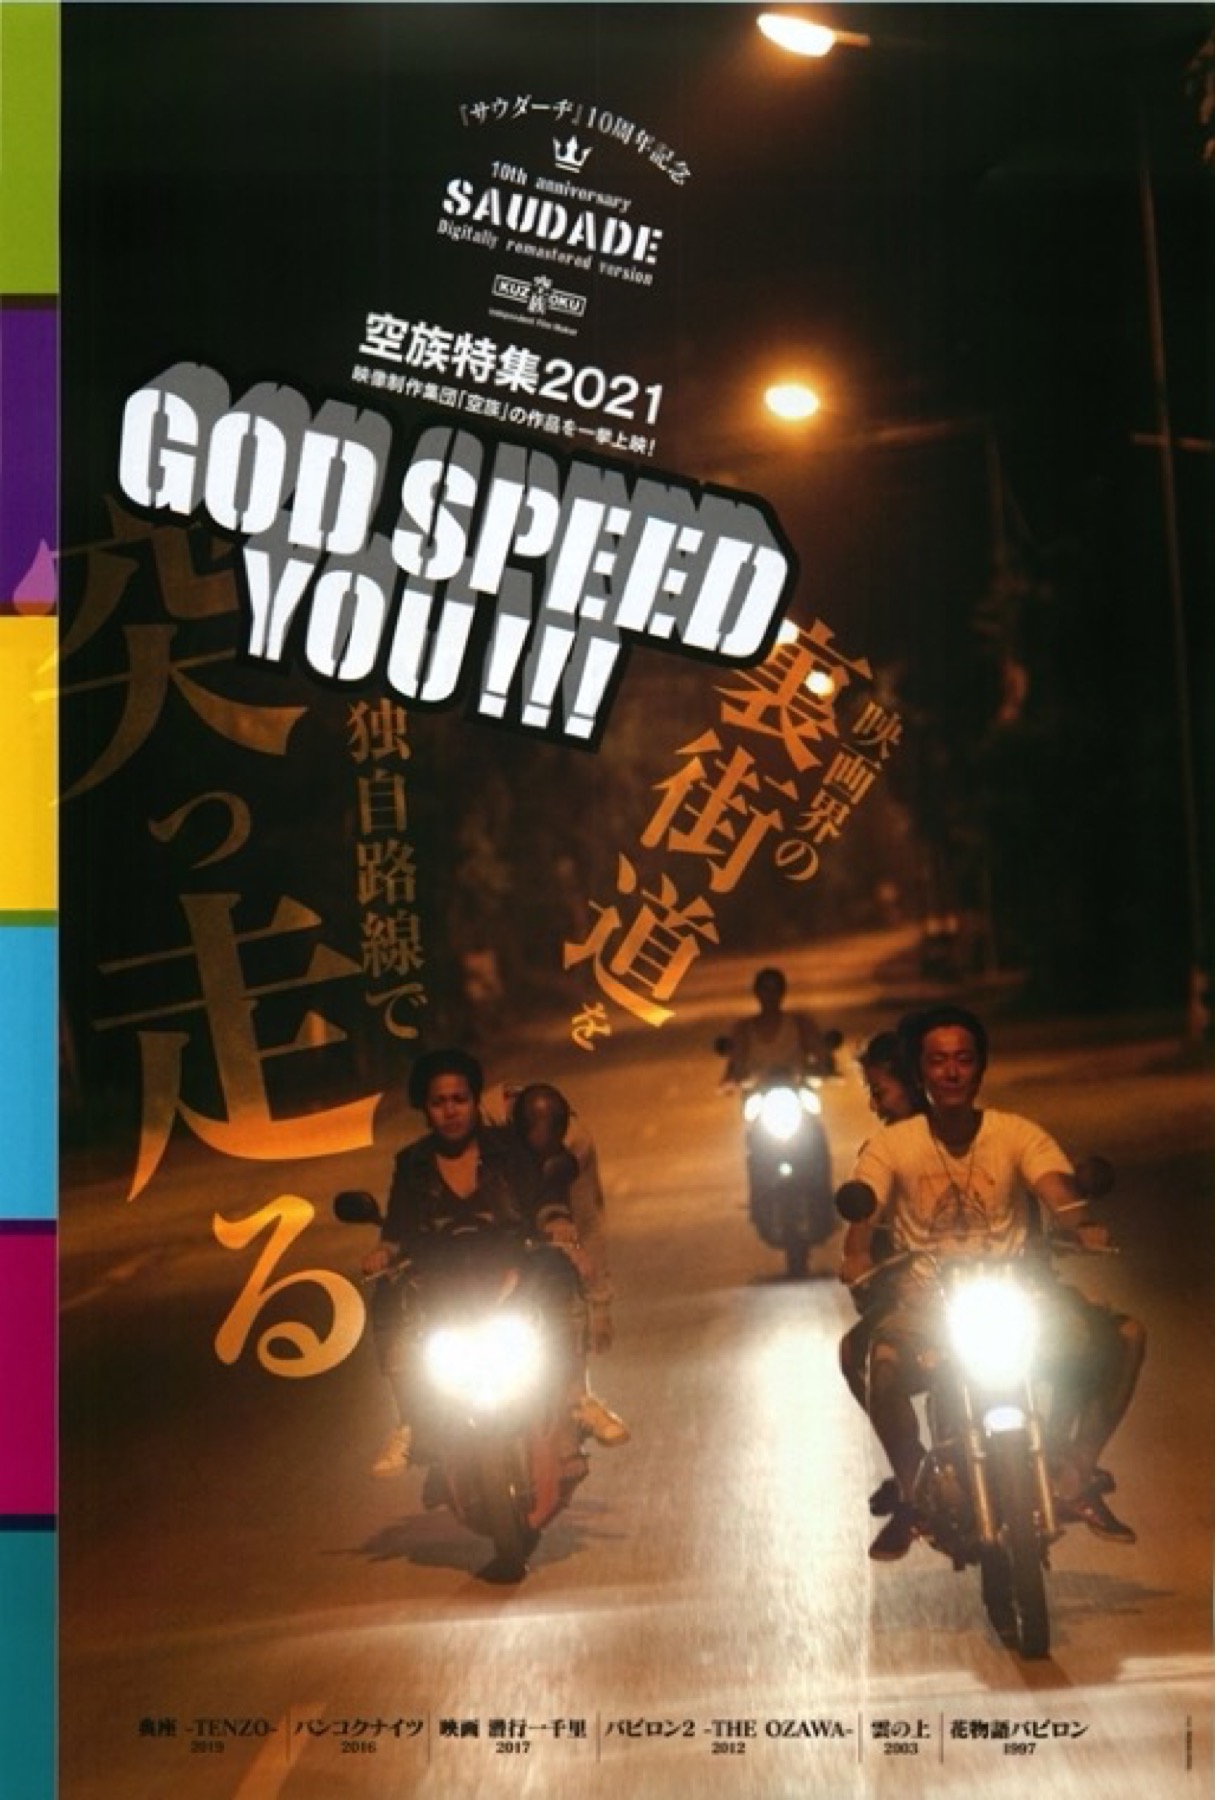 空族特集2021 God speed you!!!